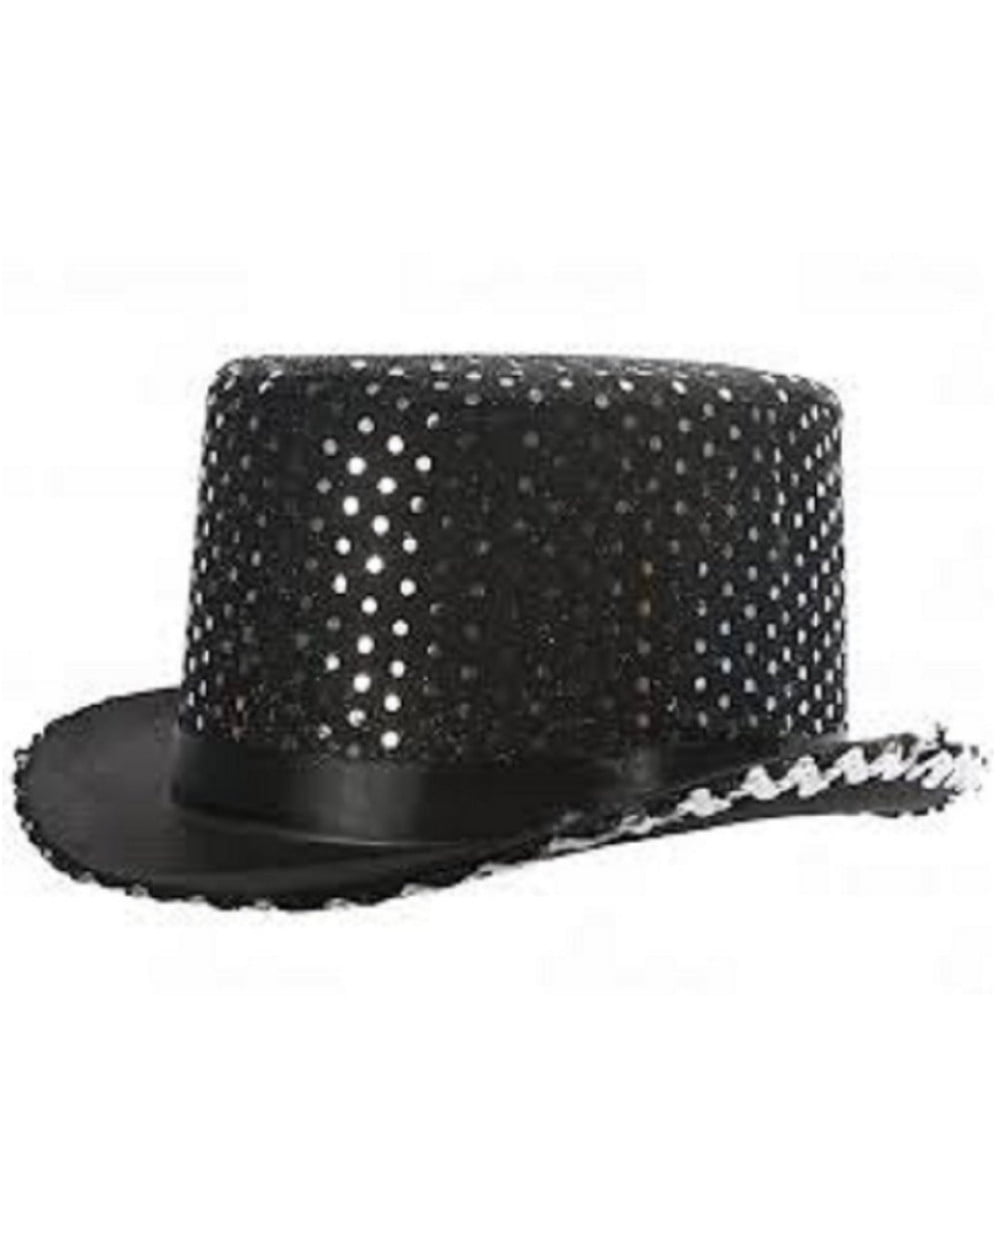 Black Sequin Top Hat 